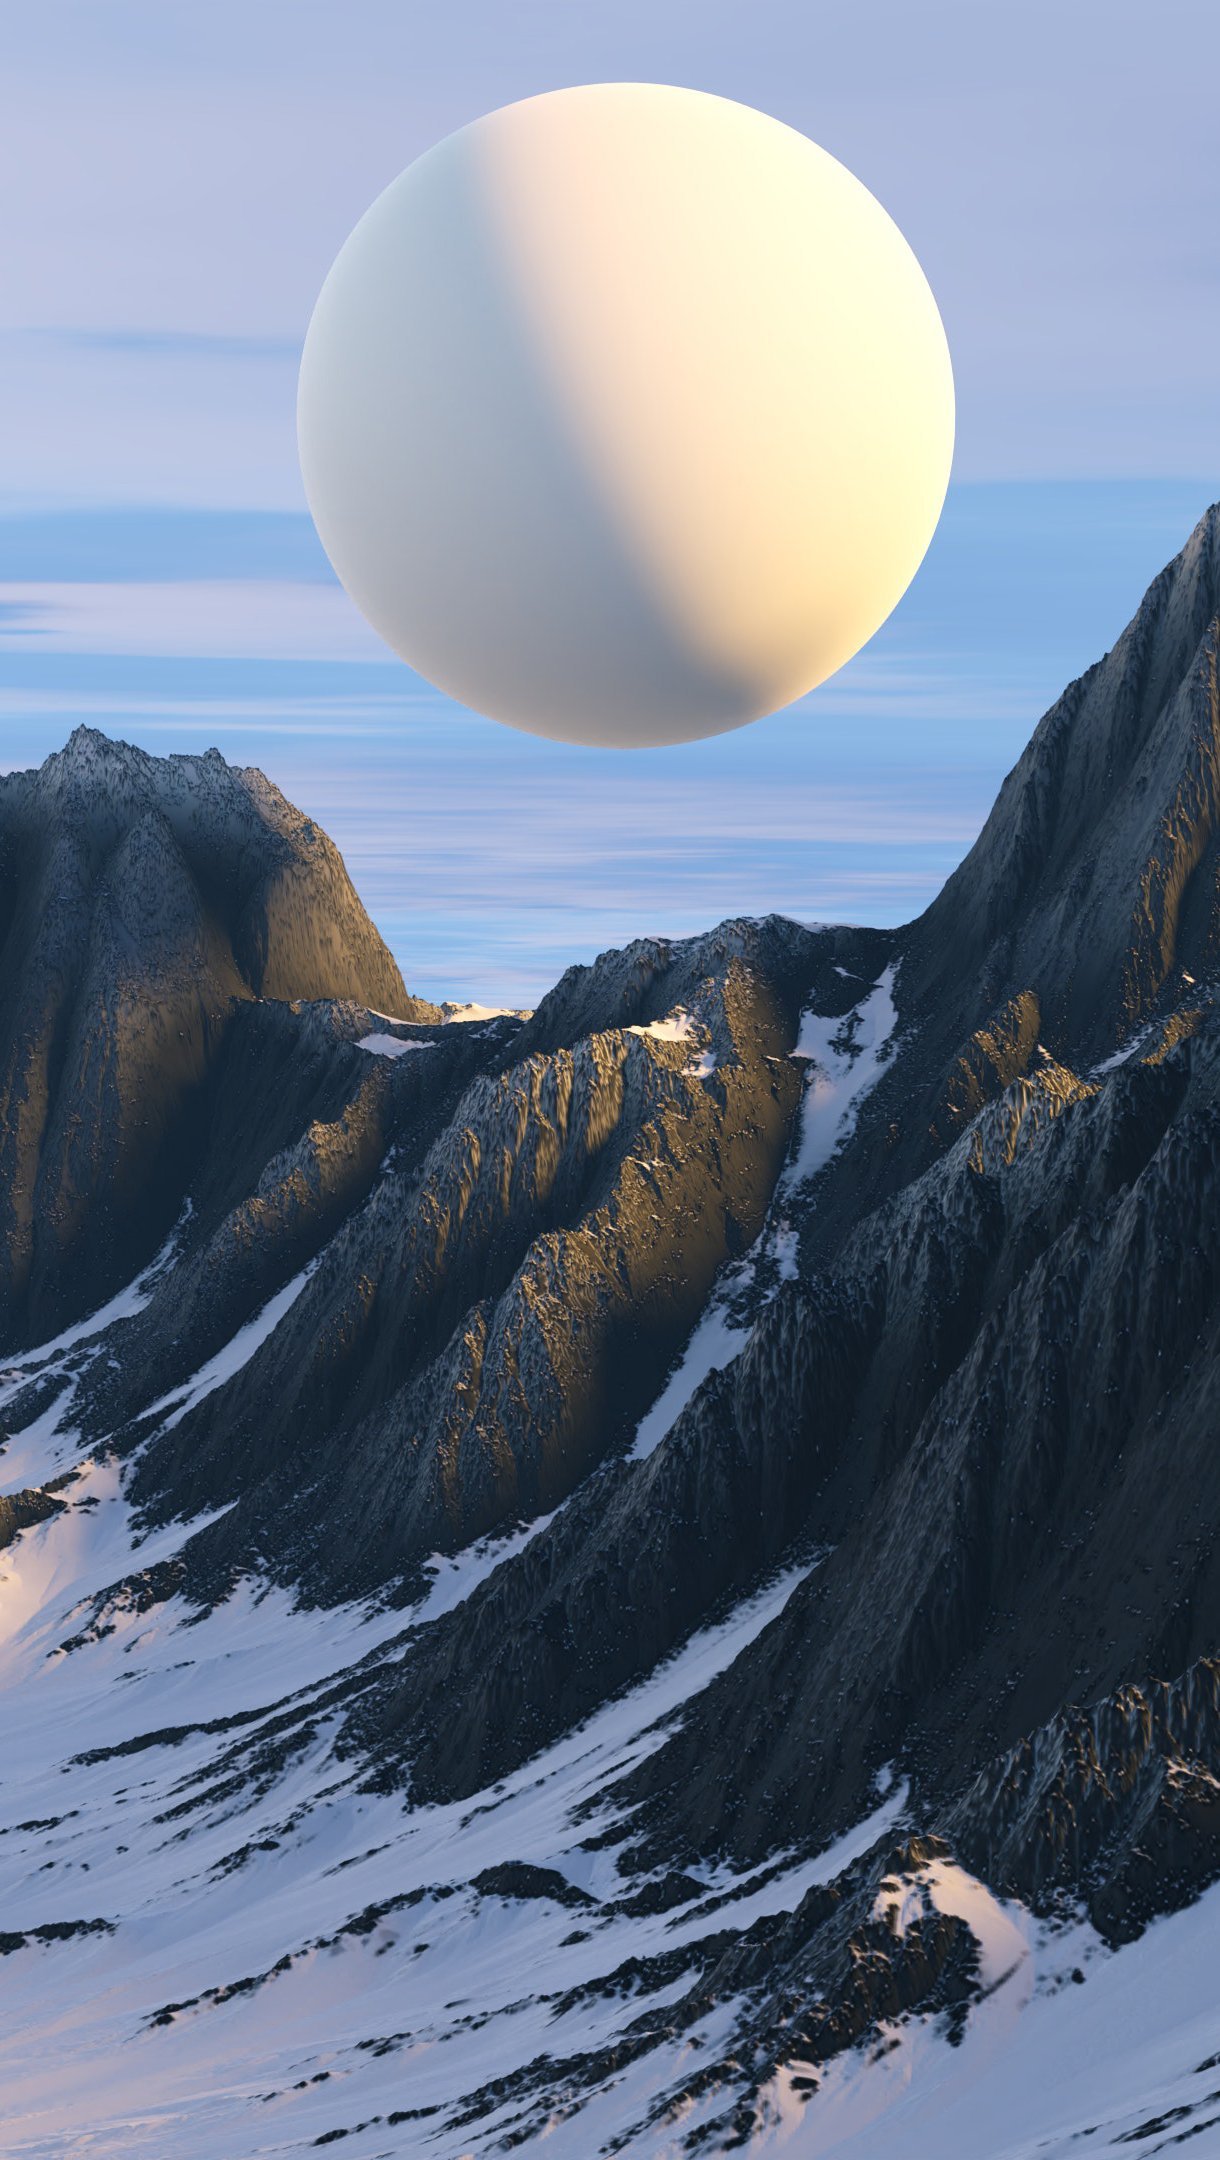 Fondos de pantalla Montañas con planeta cerca 3D Ilustración Vertical